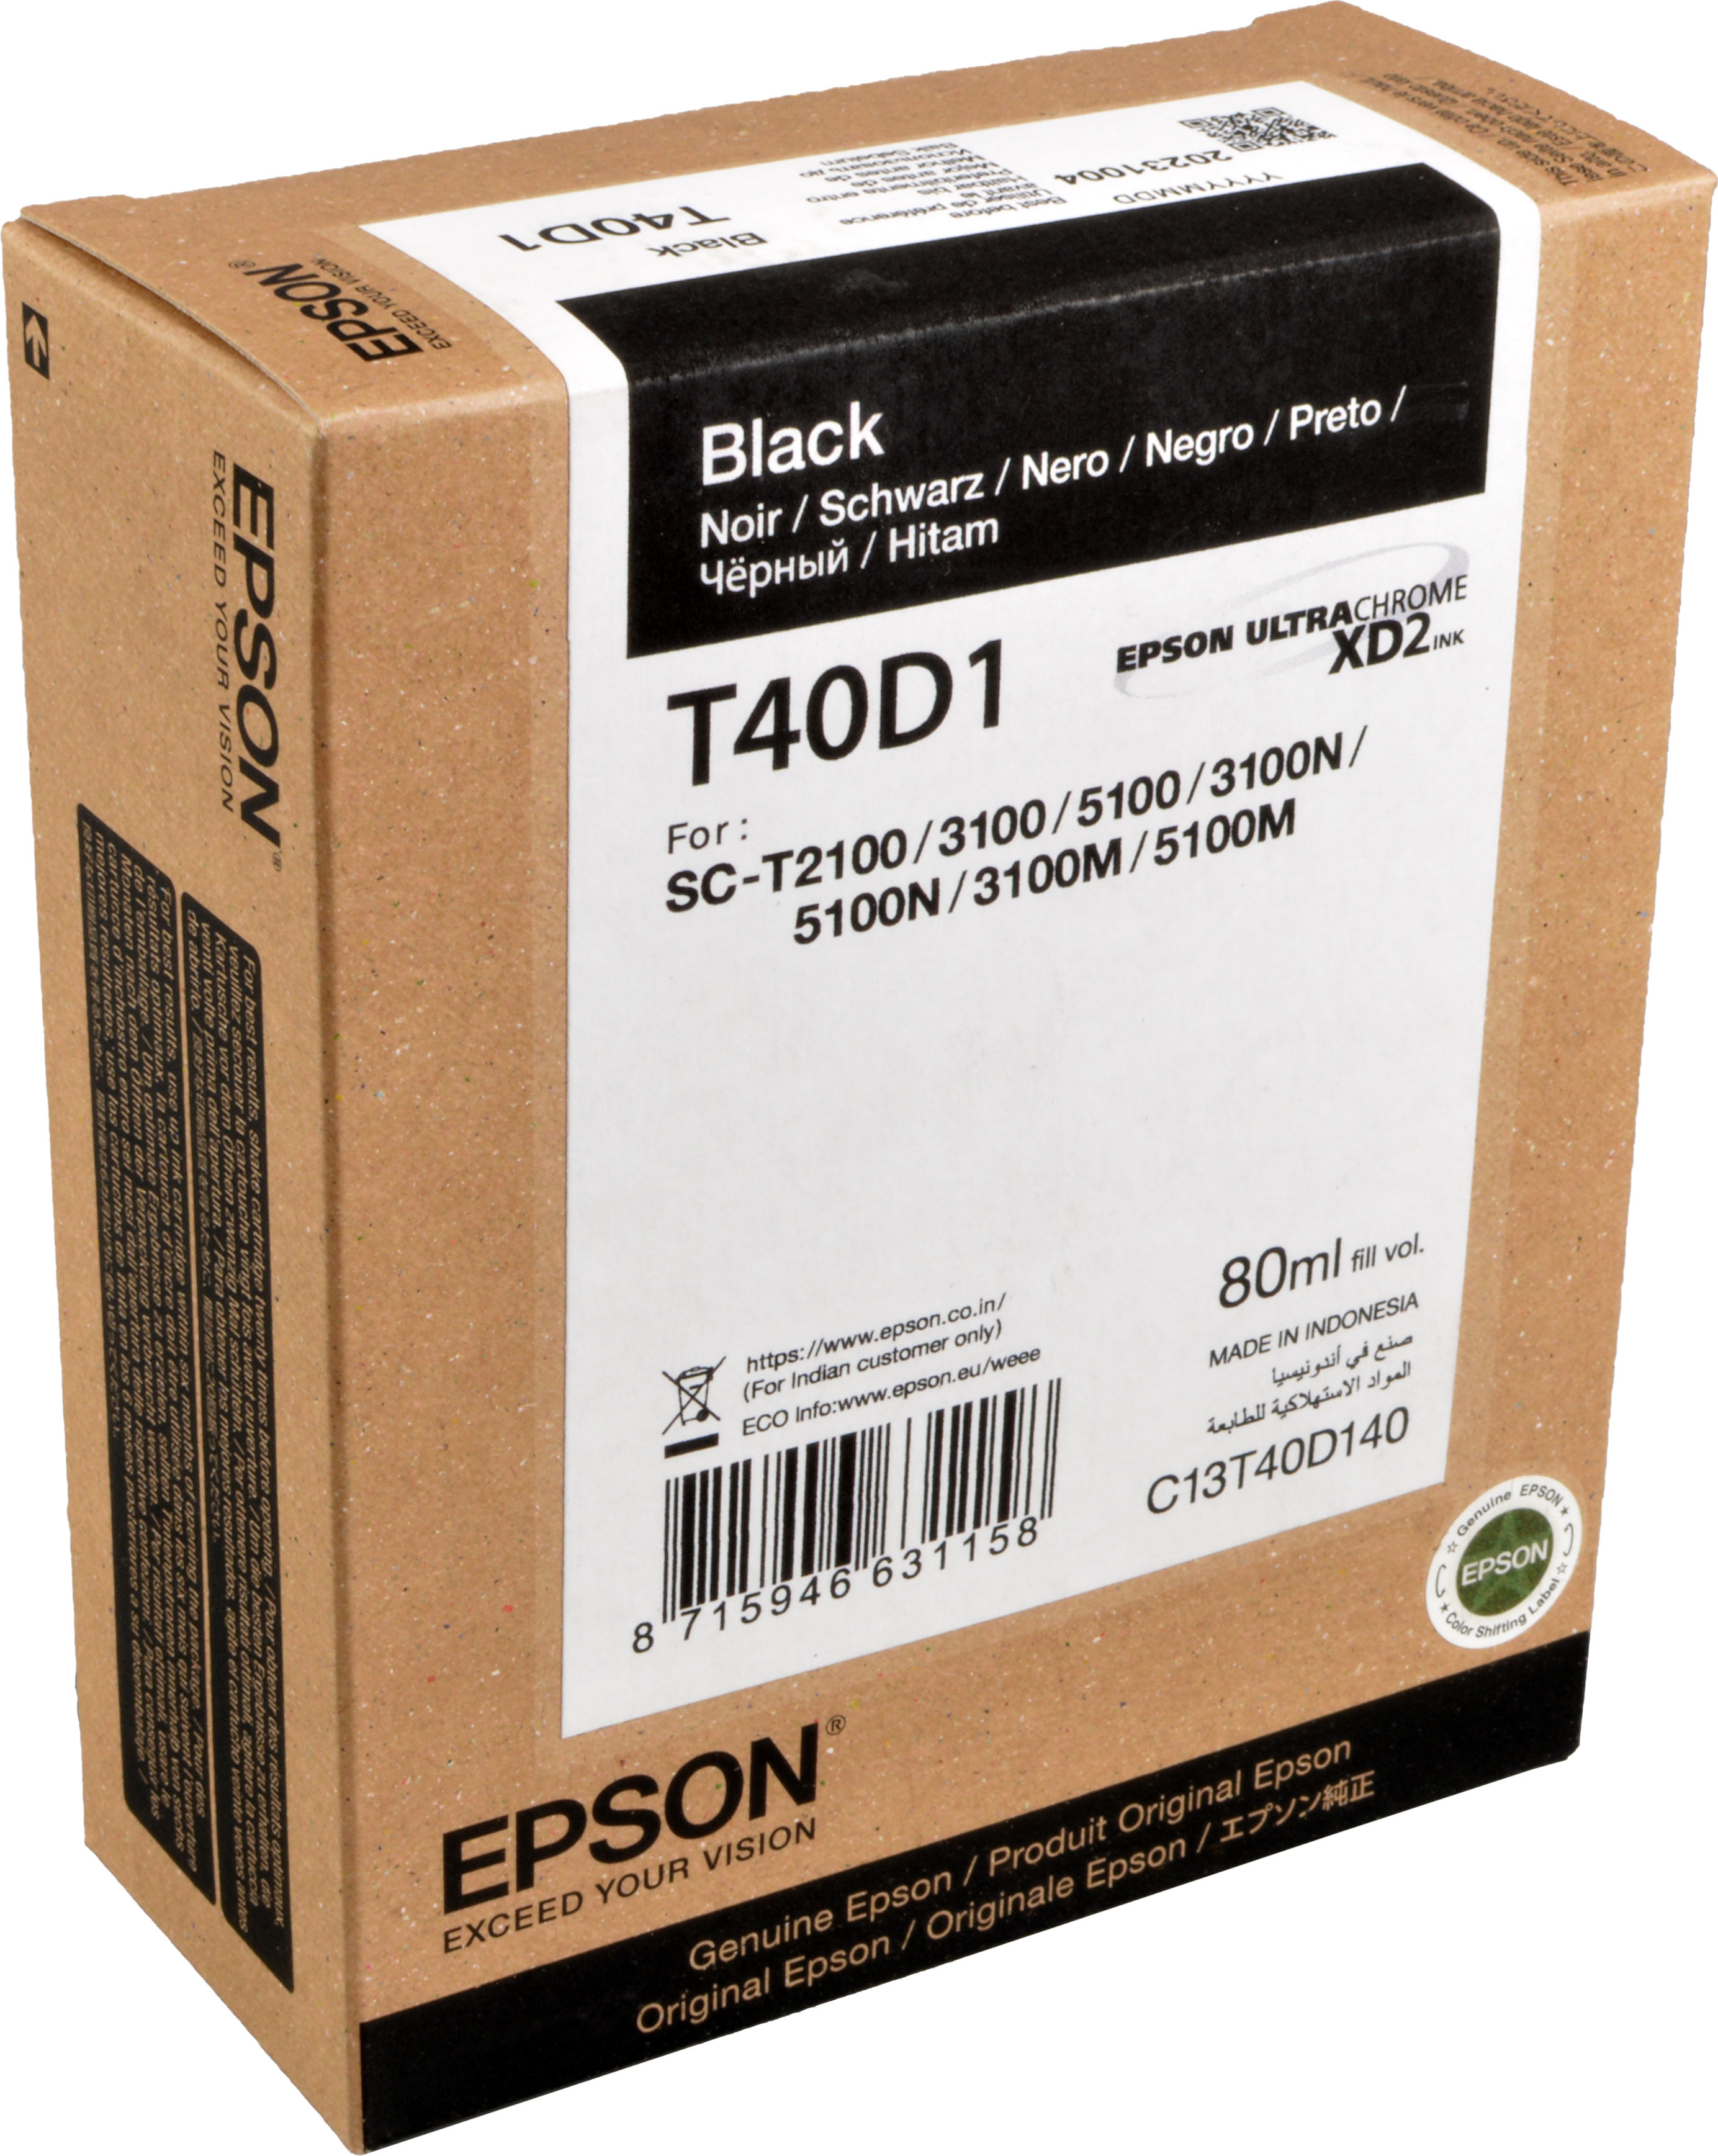 Epson Tinte C13T40D140  Black  T40D1